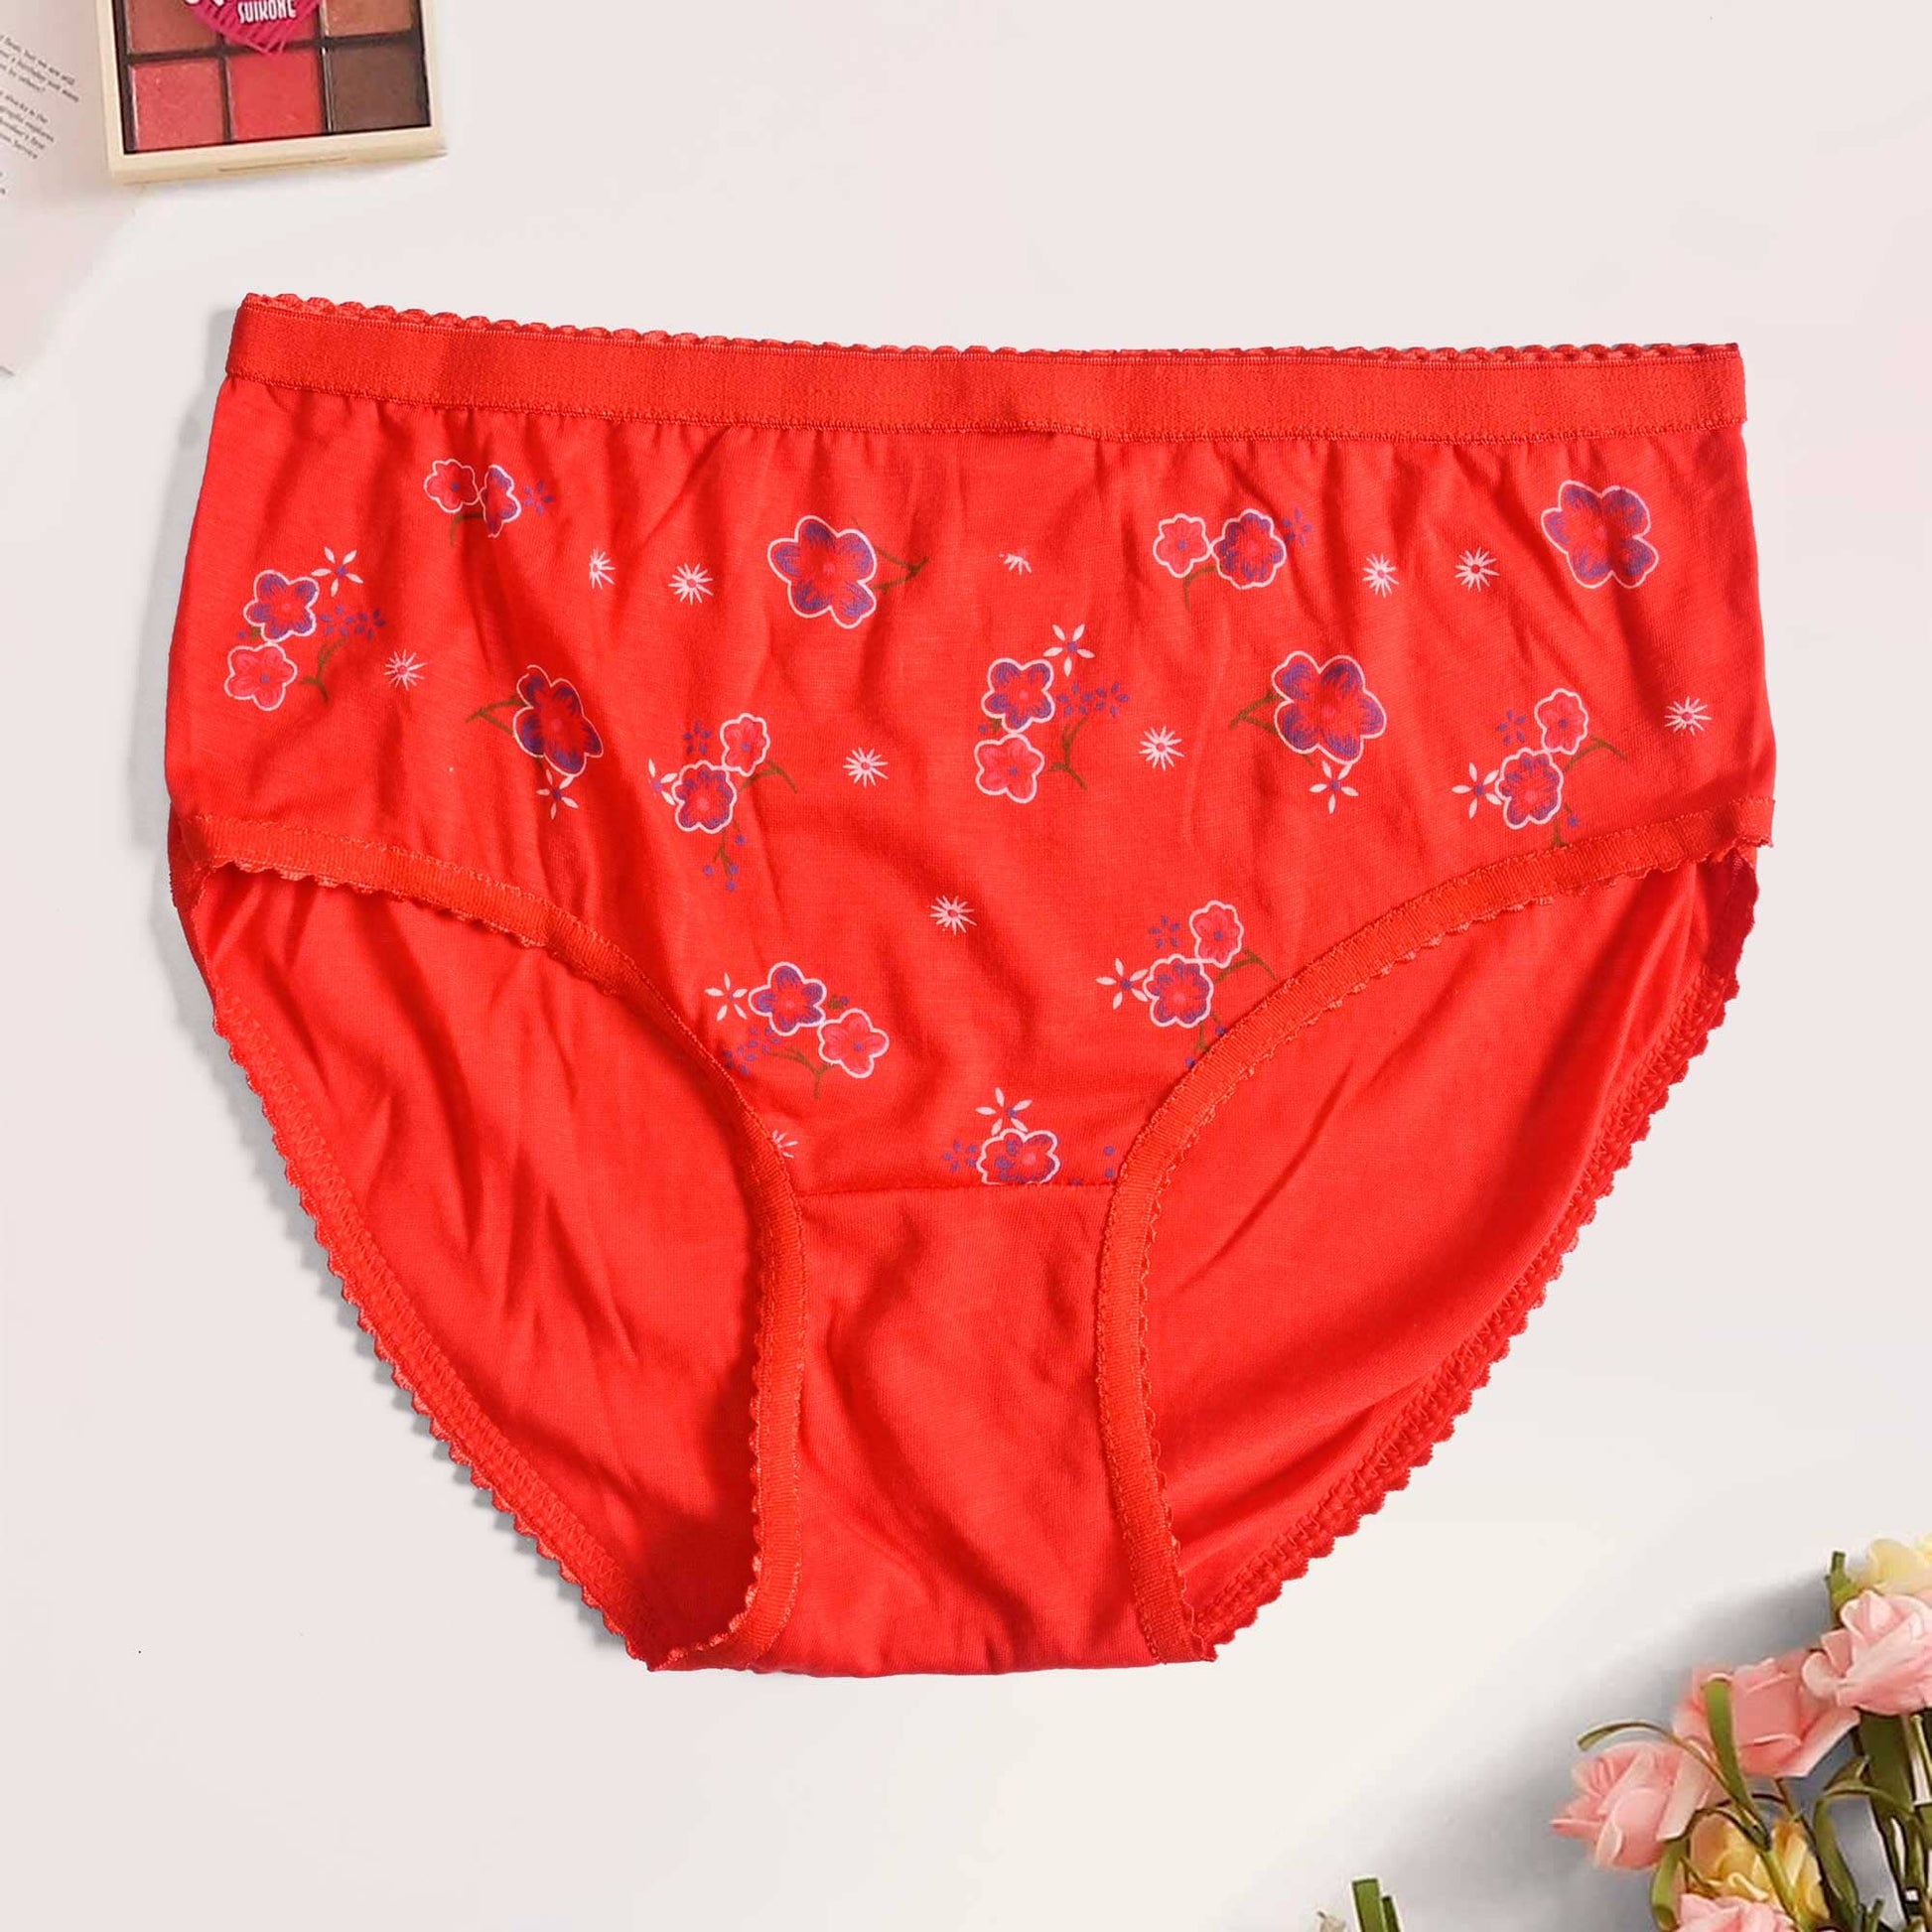 Women's Brighton Floral Printed Underwear Women's Lingerie SRL Red D1 Waist 30-34